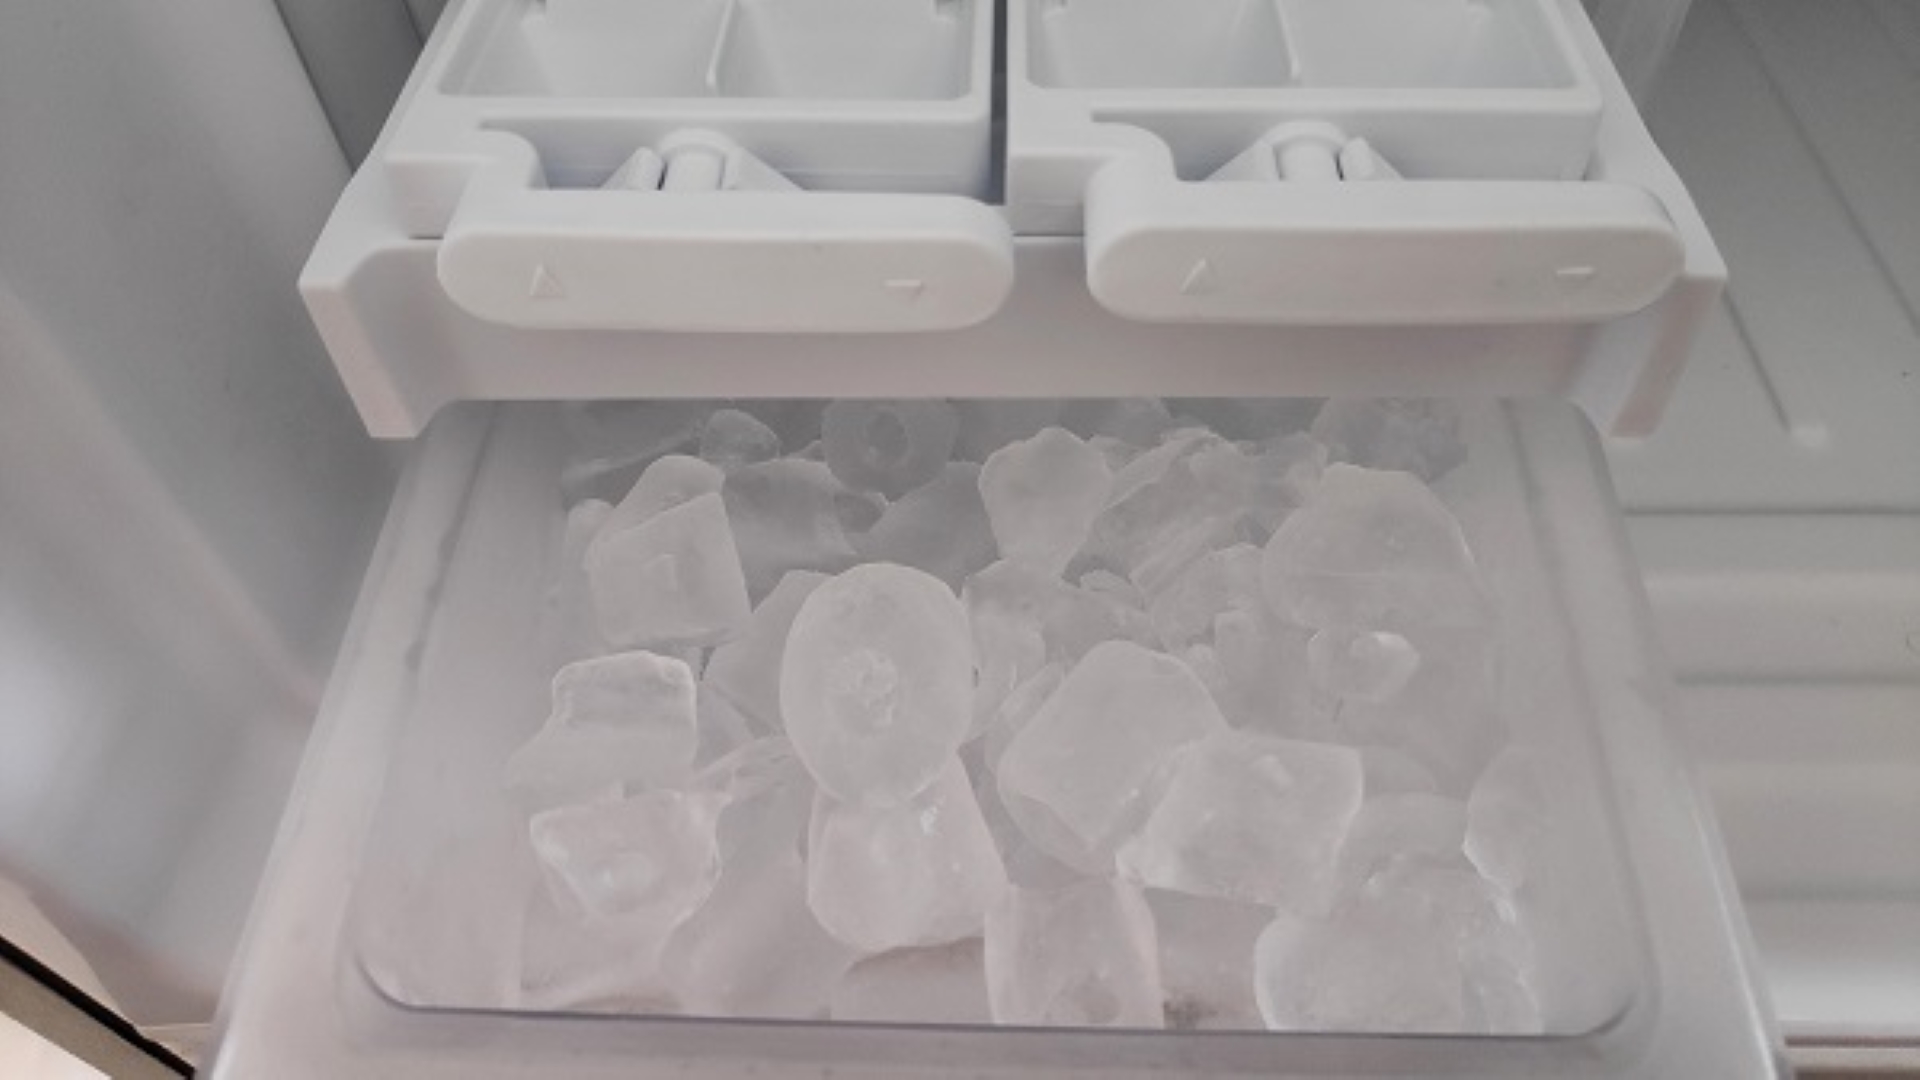 ice-machine